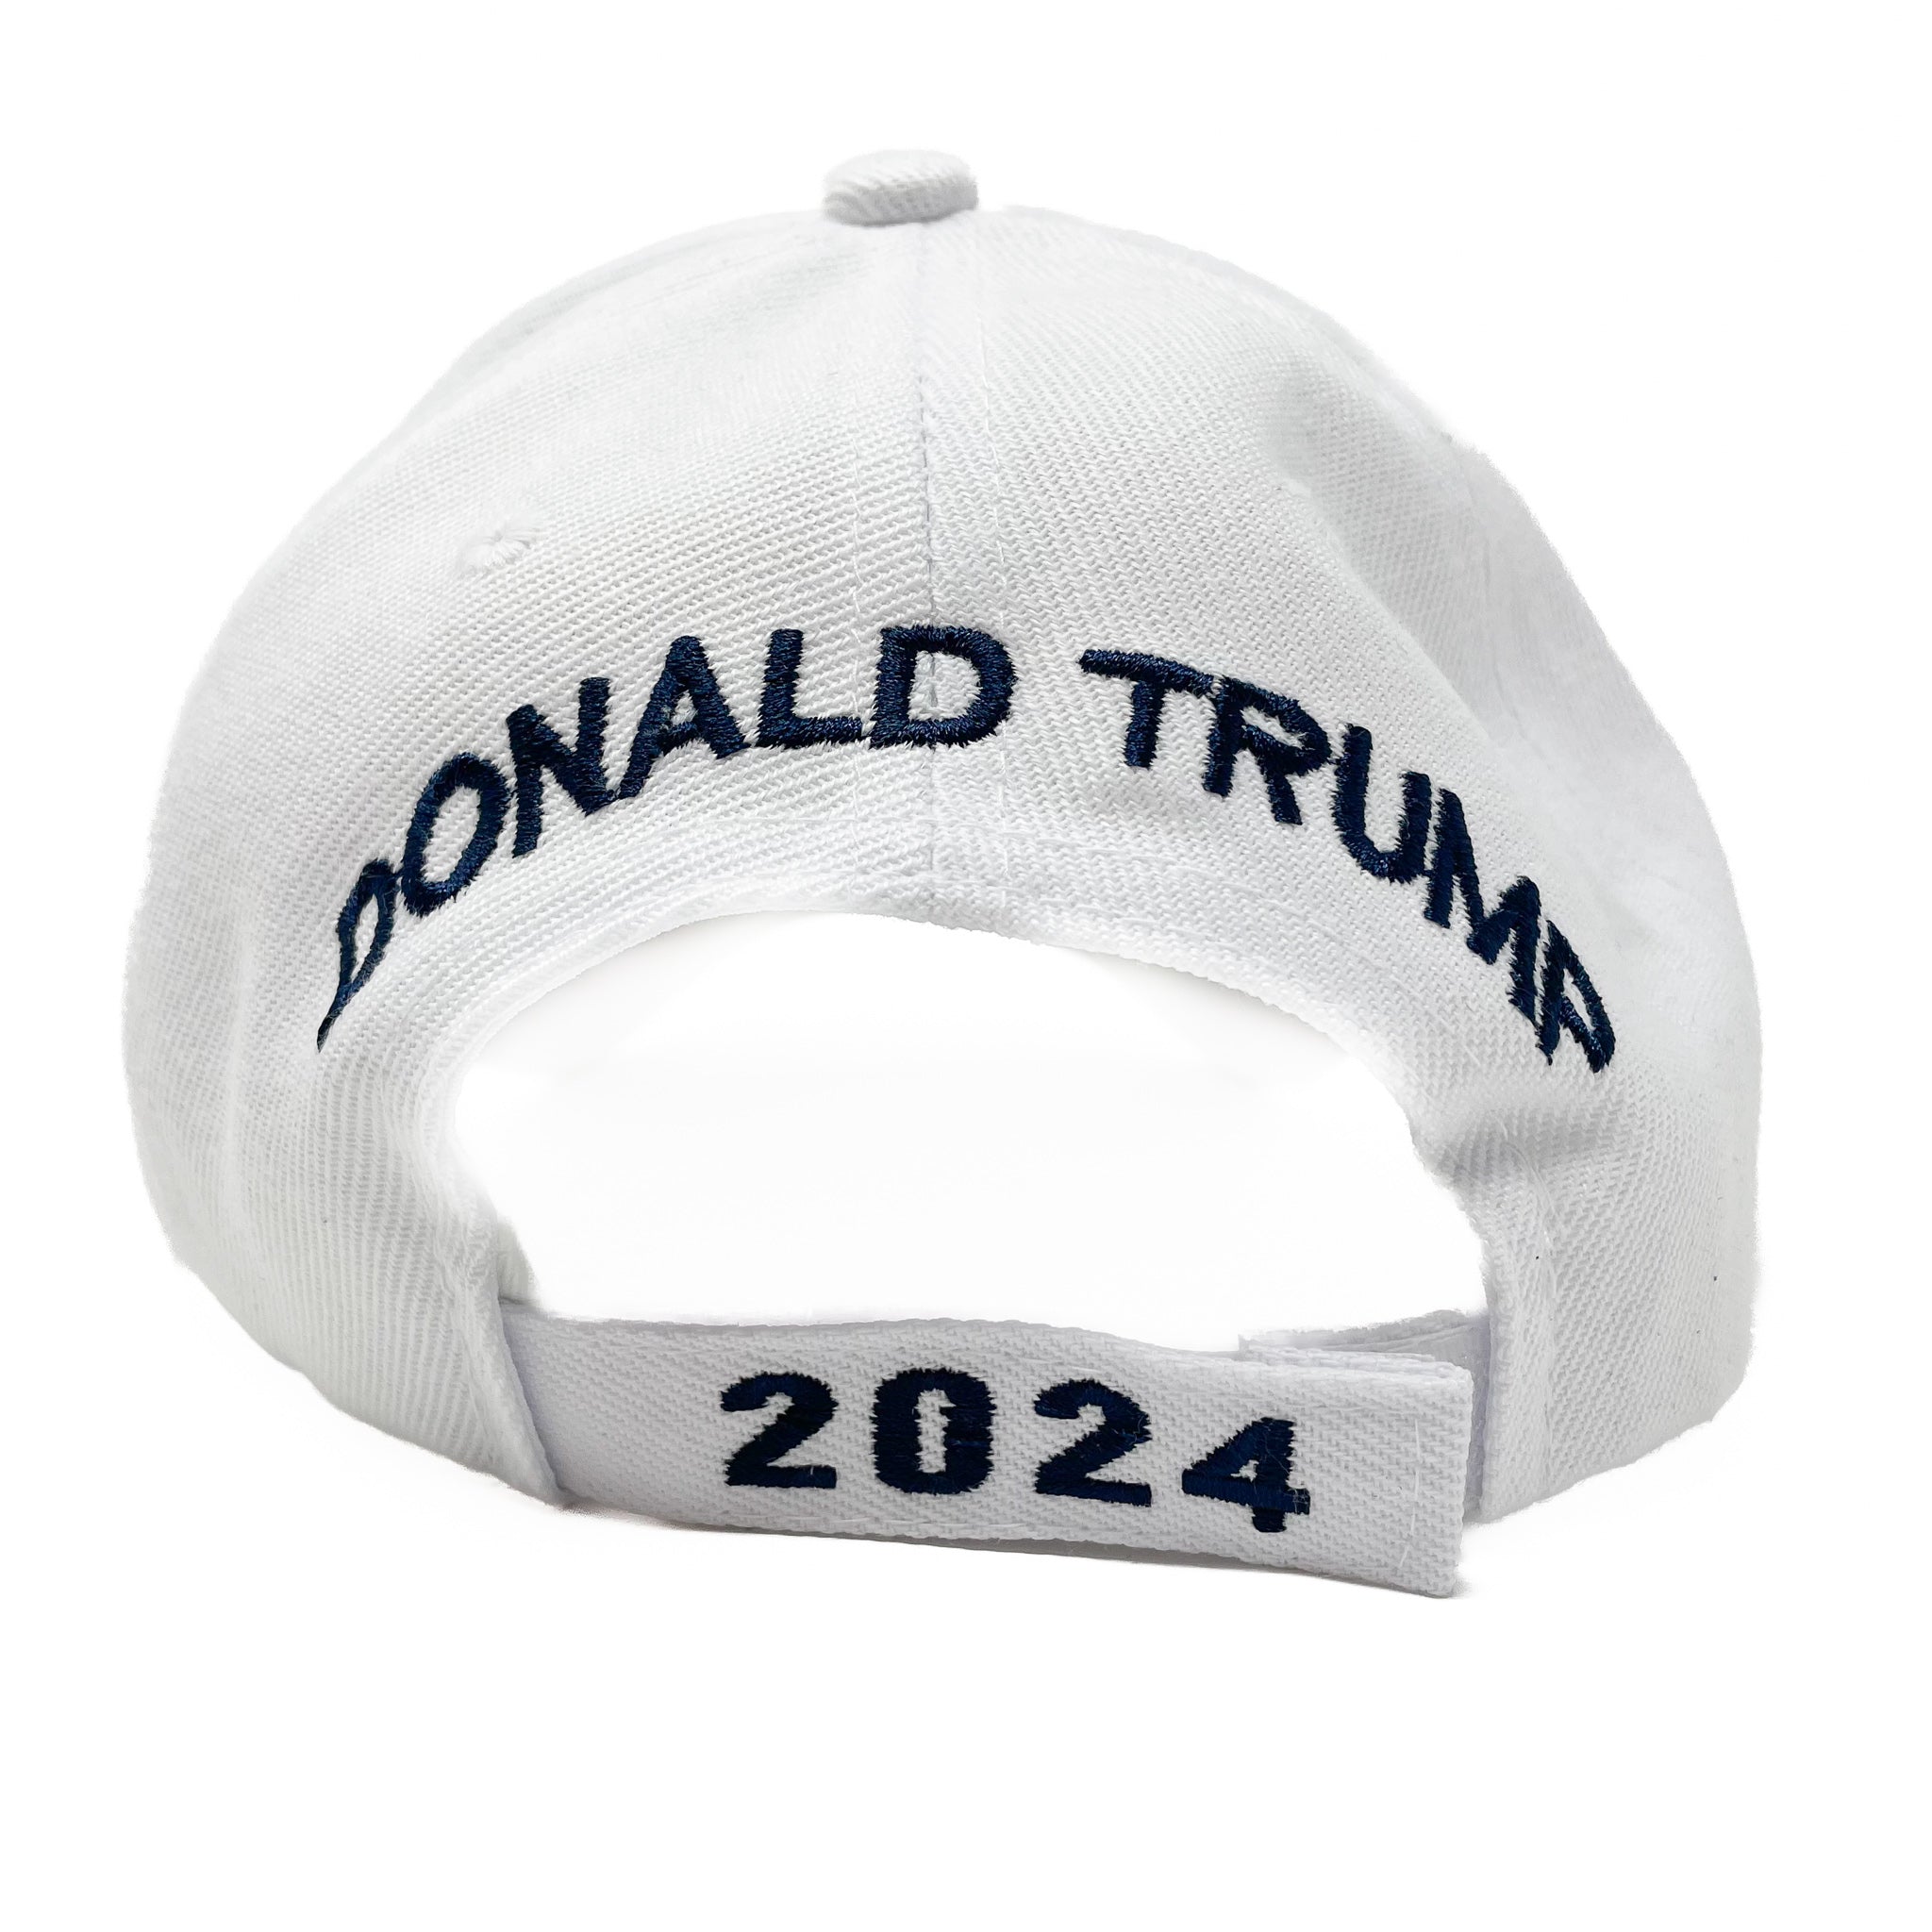 Trump 'Take America Back' Cap (3 Colors)